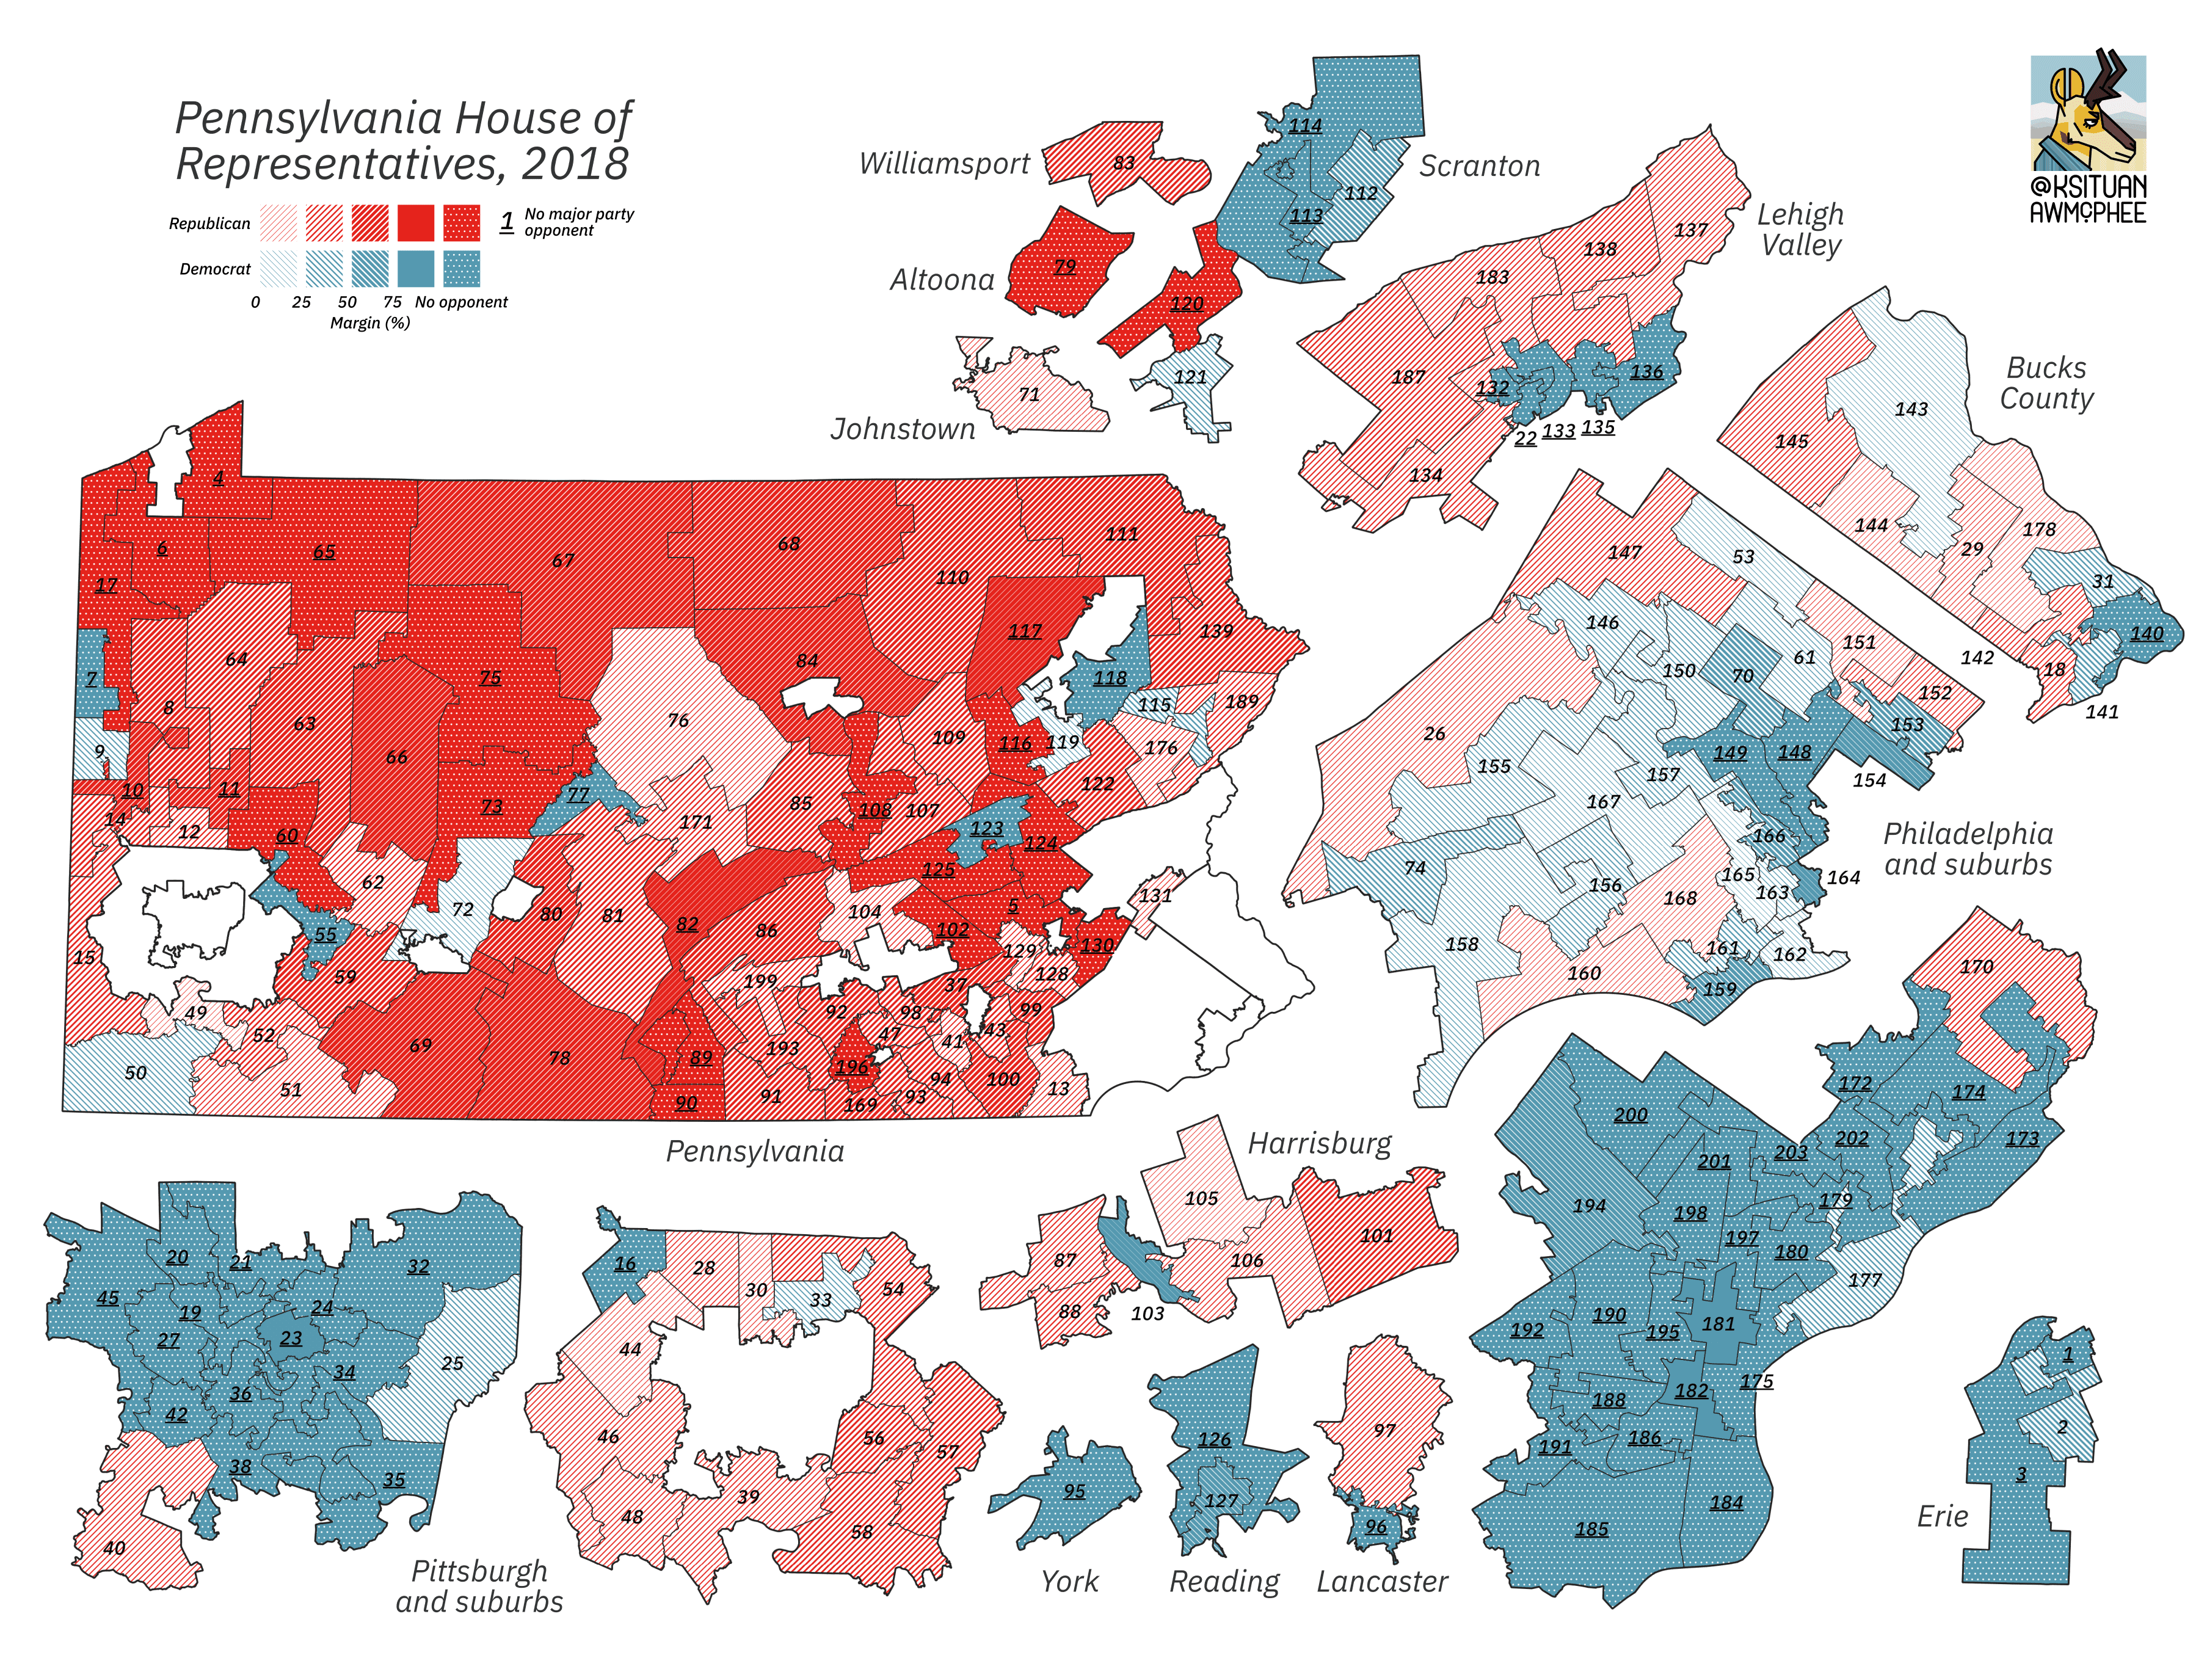 A political map of Pennsylvania.